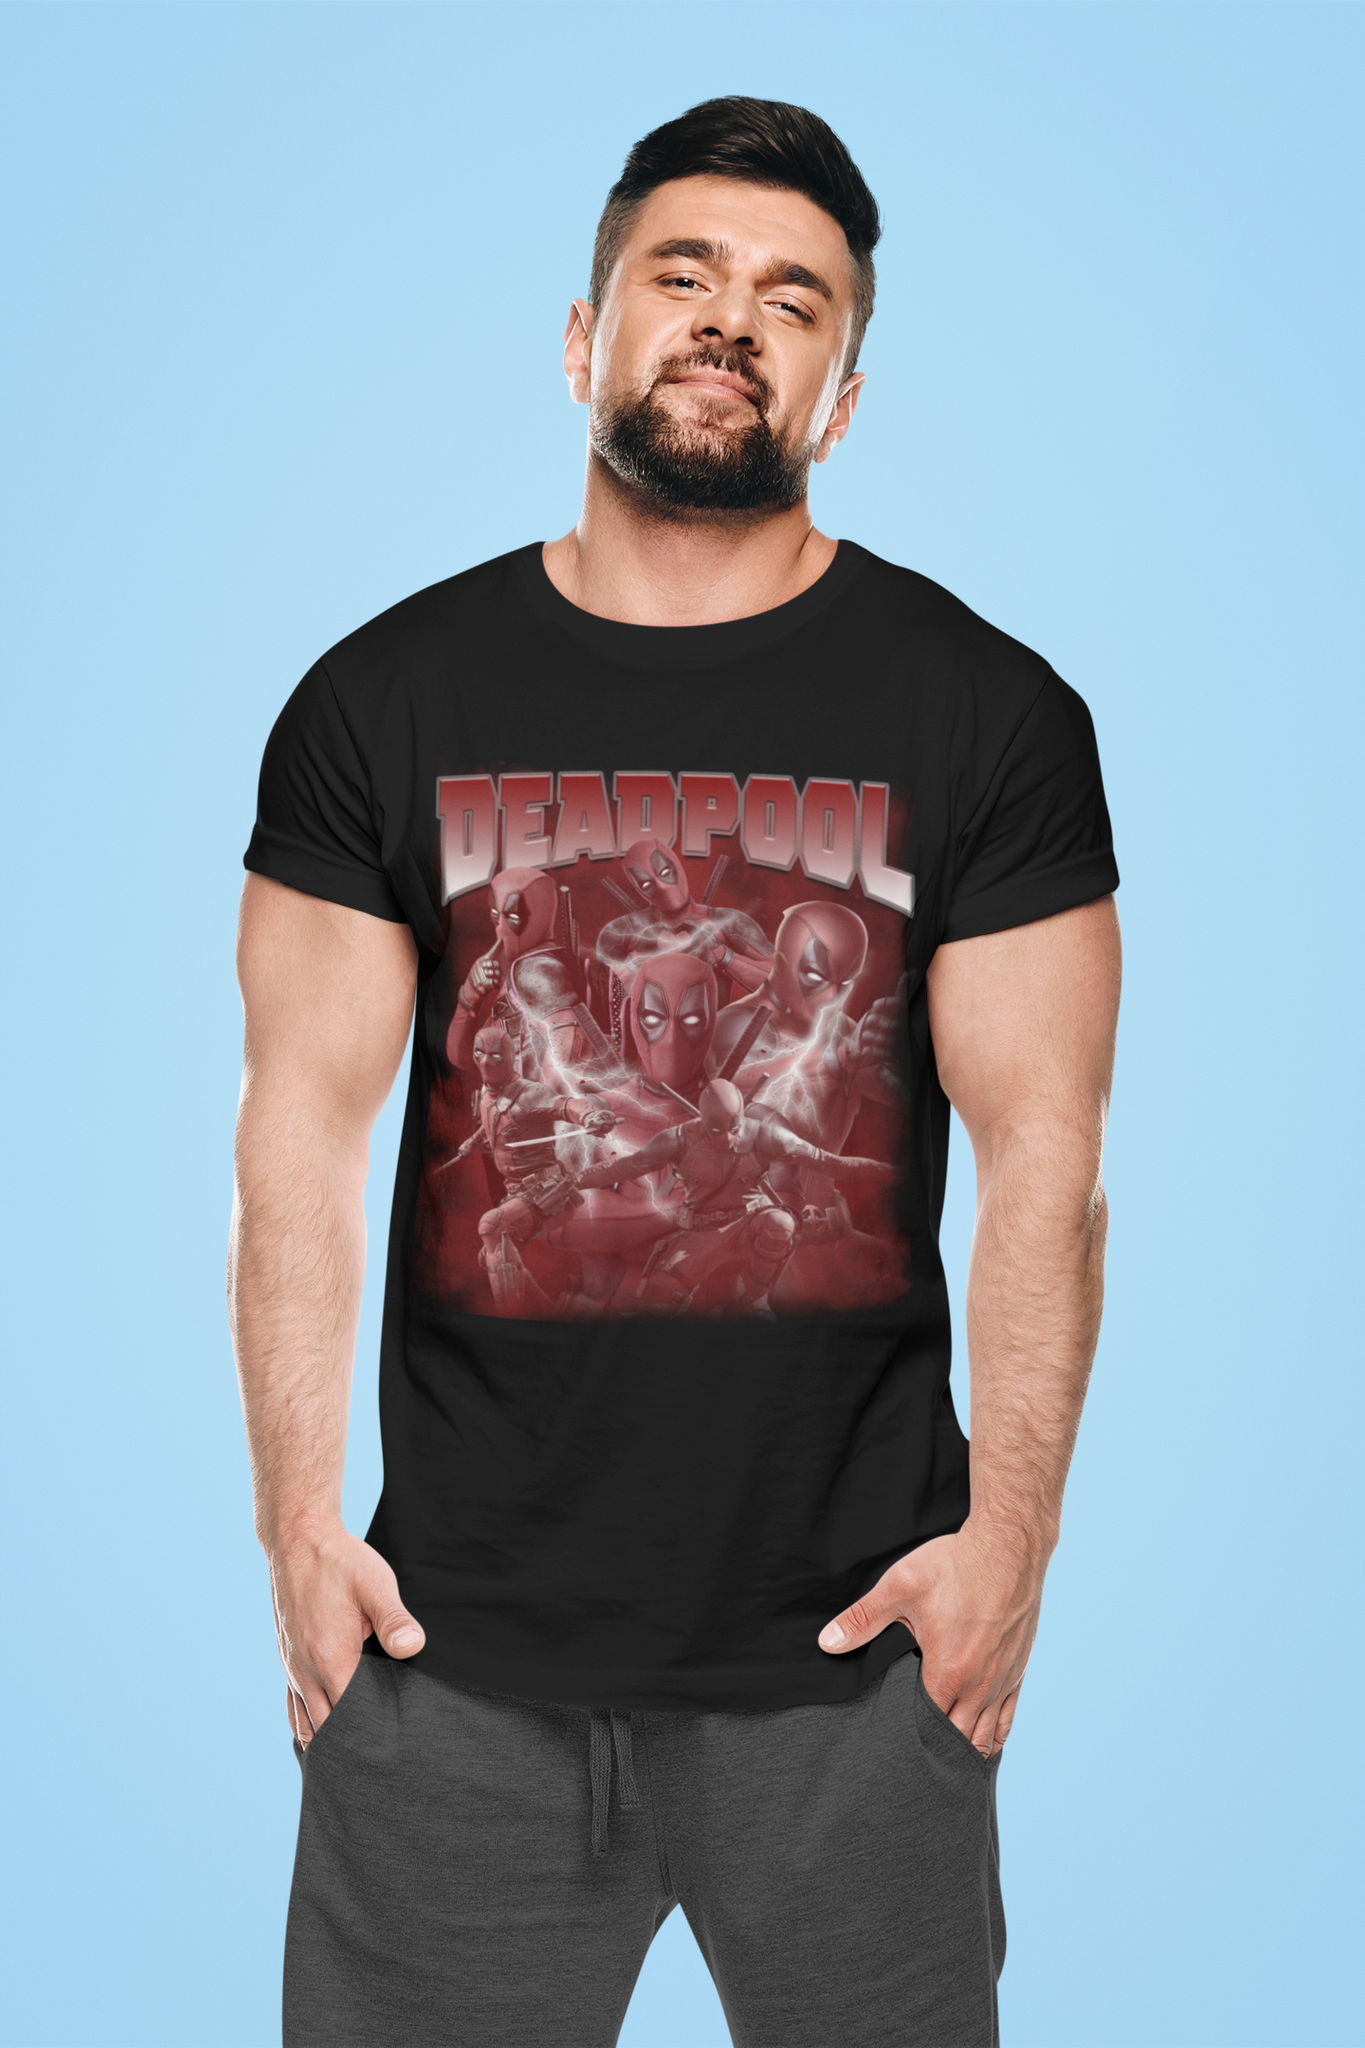 Deadpool T Shirt, Superhero Deadpool T Shirt